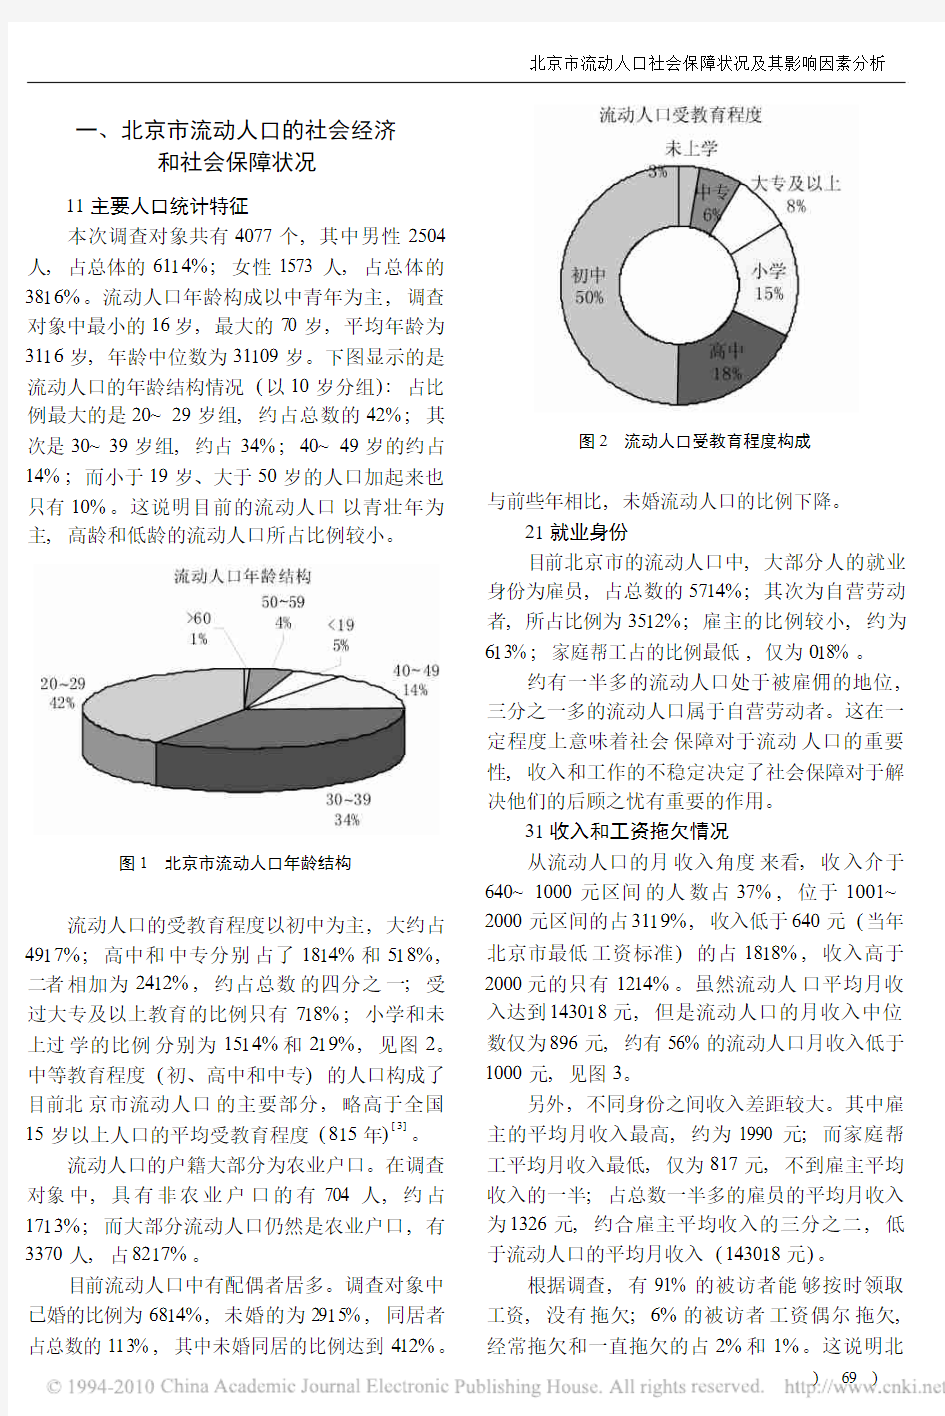 北京市流动人口社会保障状况及其影响因素分析